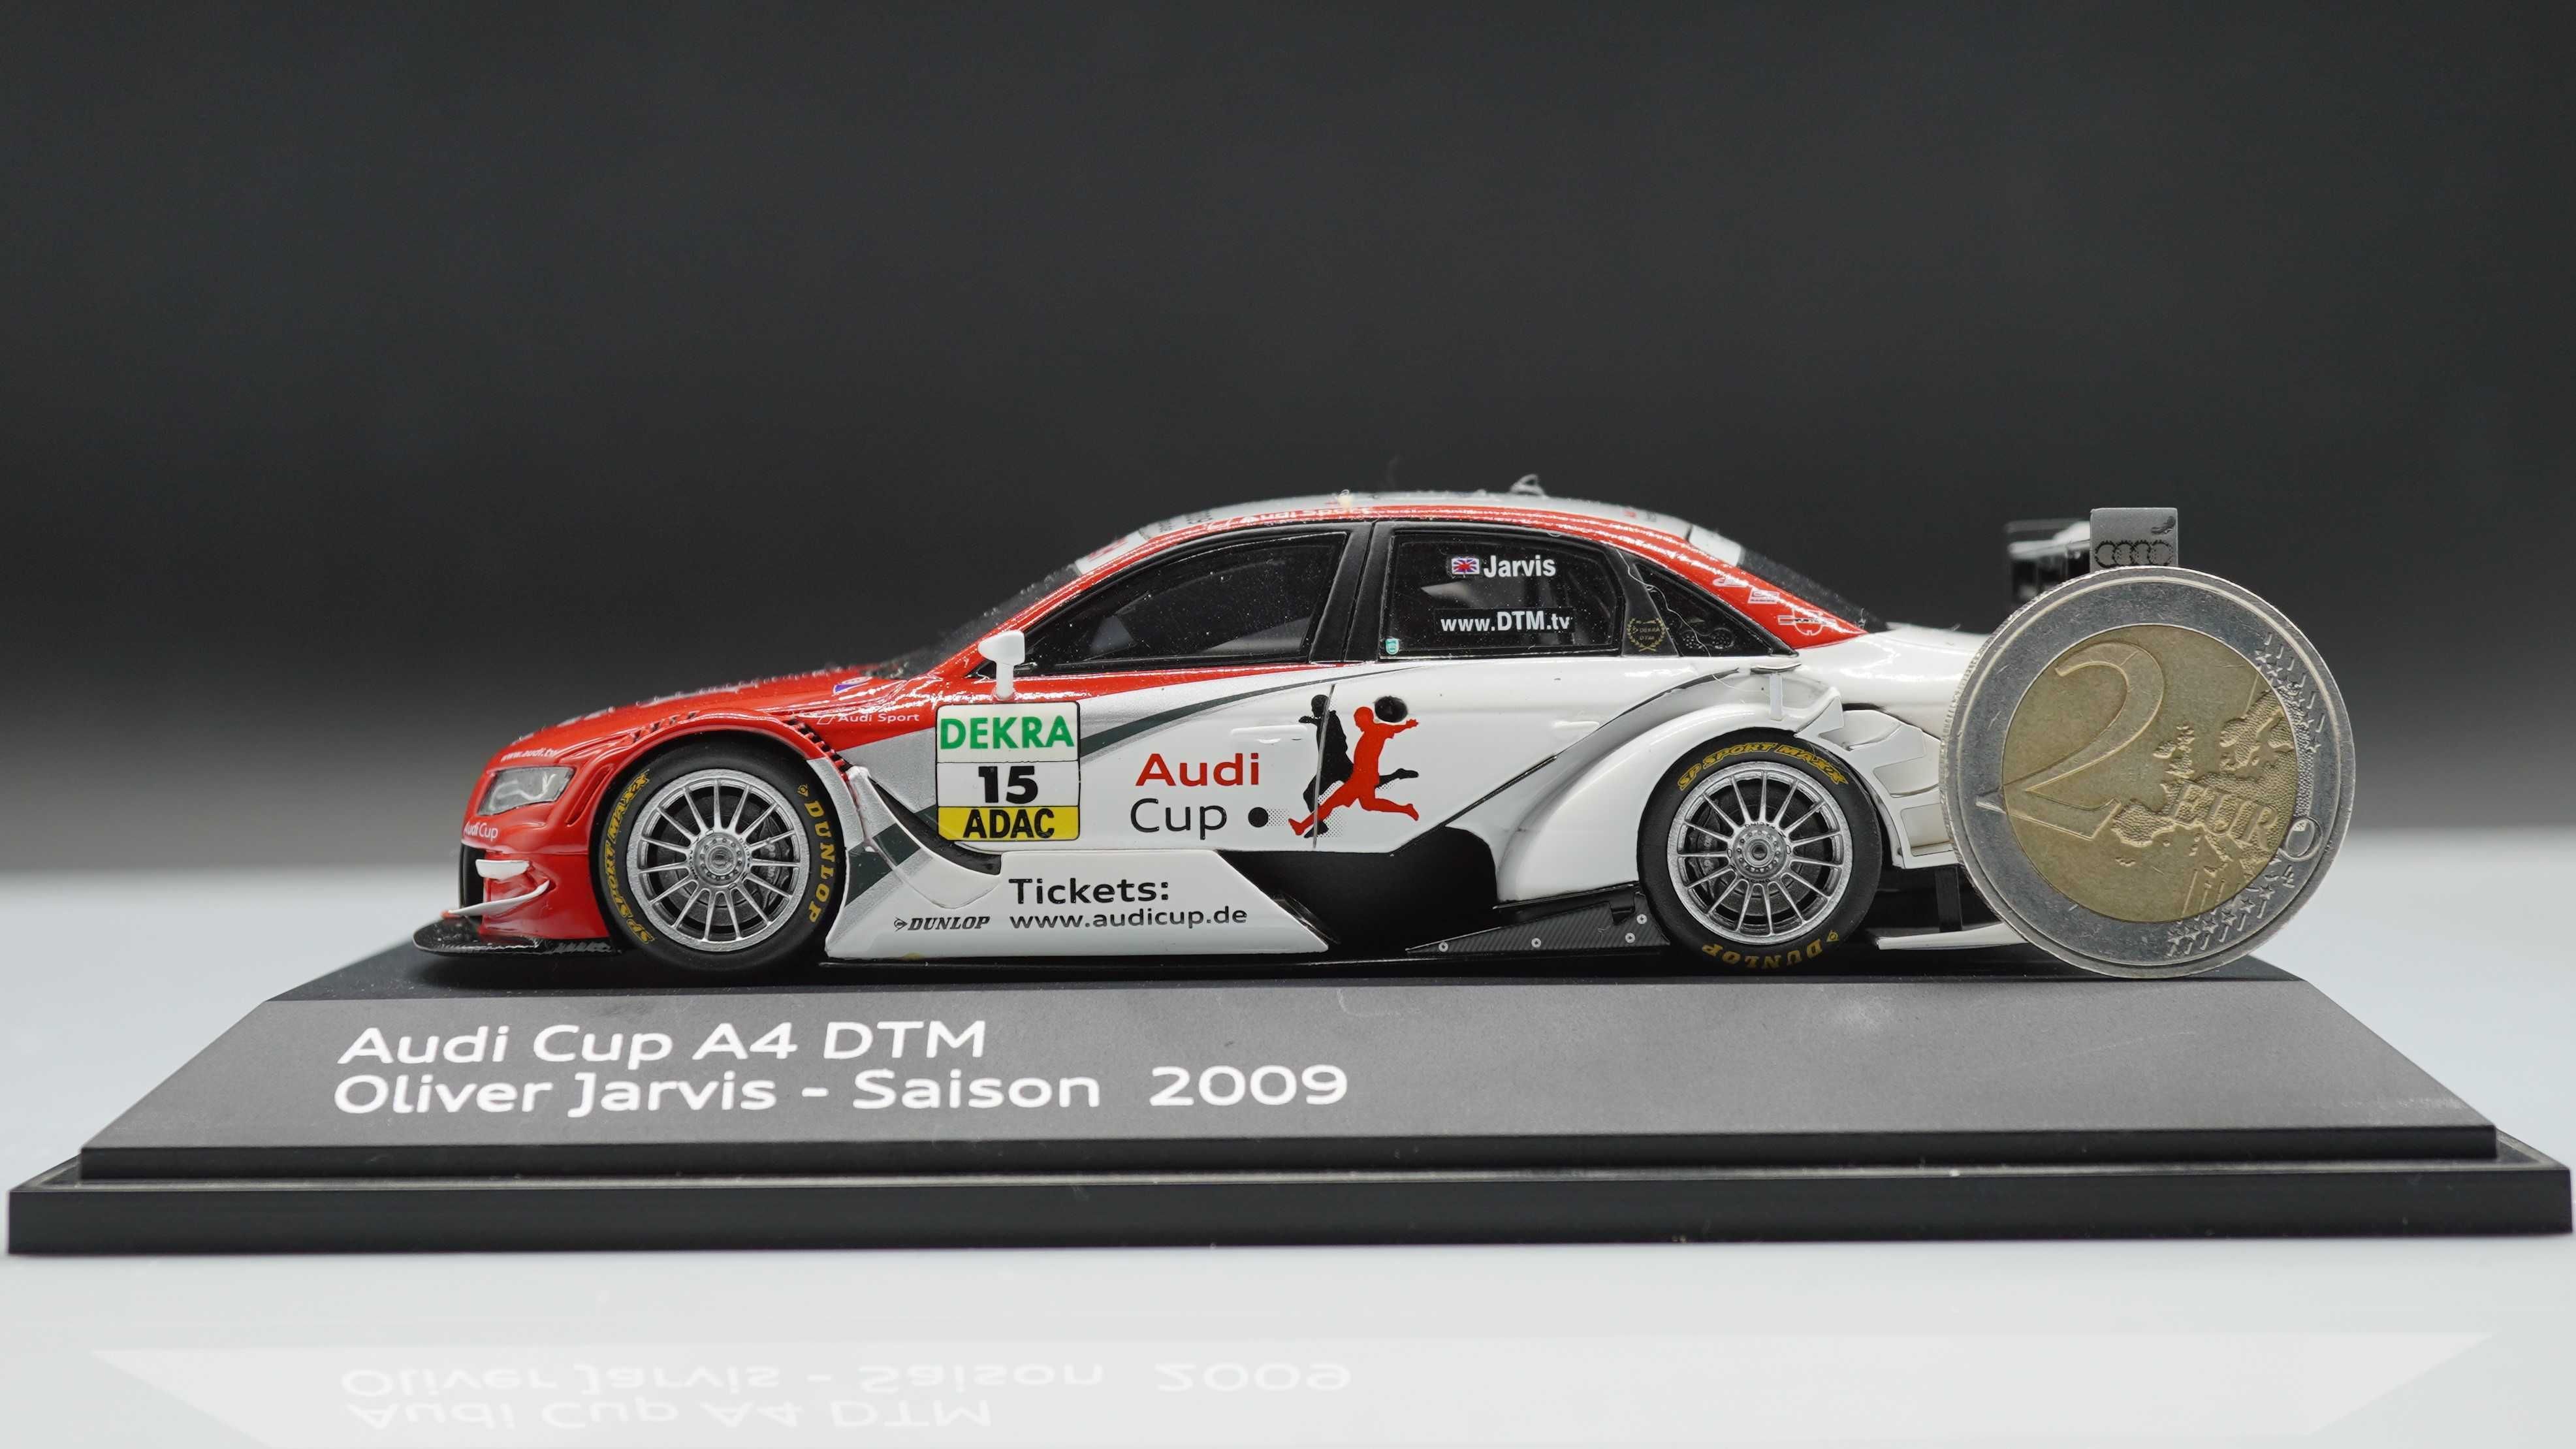 2009 Audi A4 DTM Olivier Jarvis - Spark 1/43